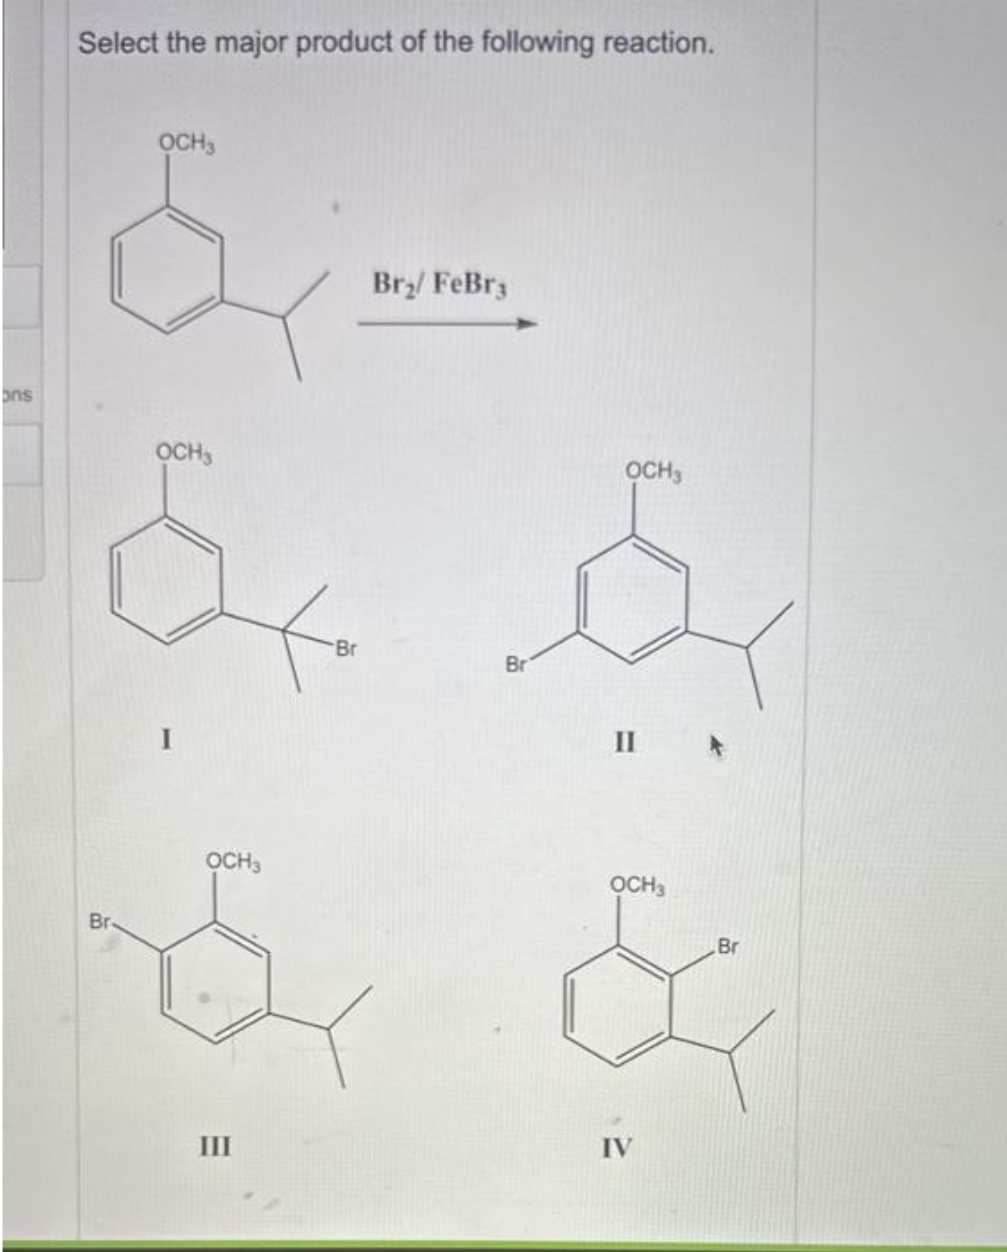 ons
Select the major product of the following reaction.
OCH3
Br
OCH3
OCH3
Safe Sy
Br
II
OCH3
&
III
Br₂/ FeBr3
Br
OCH 3
Br
&
IV